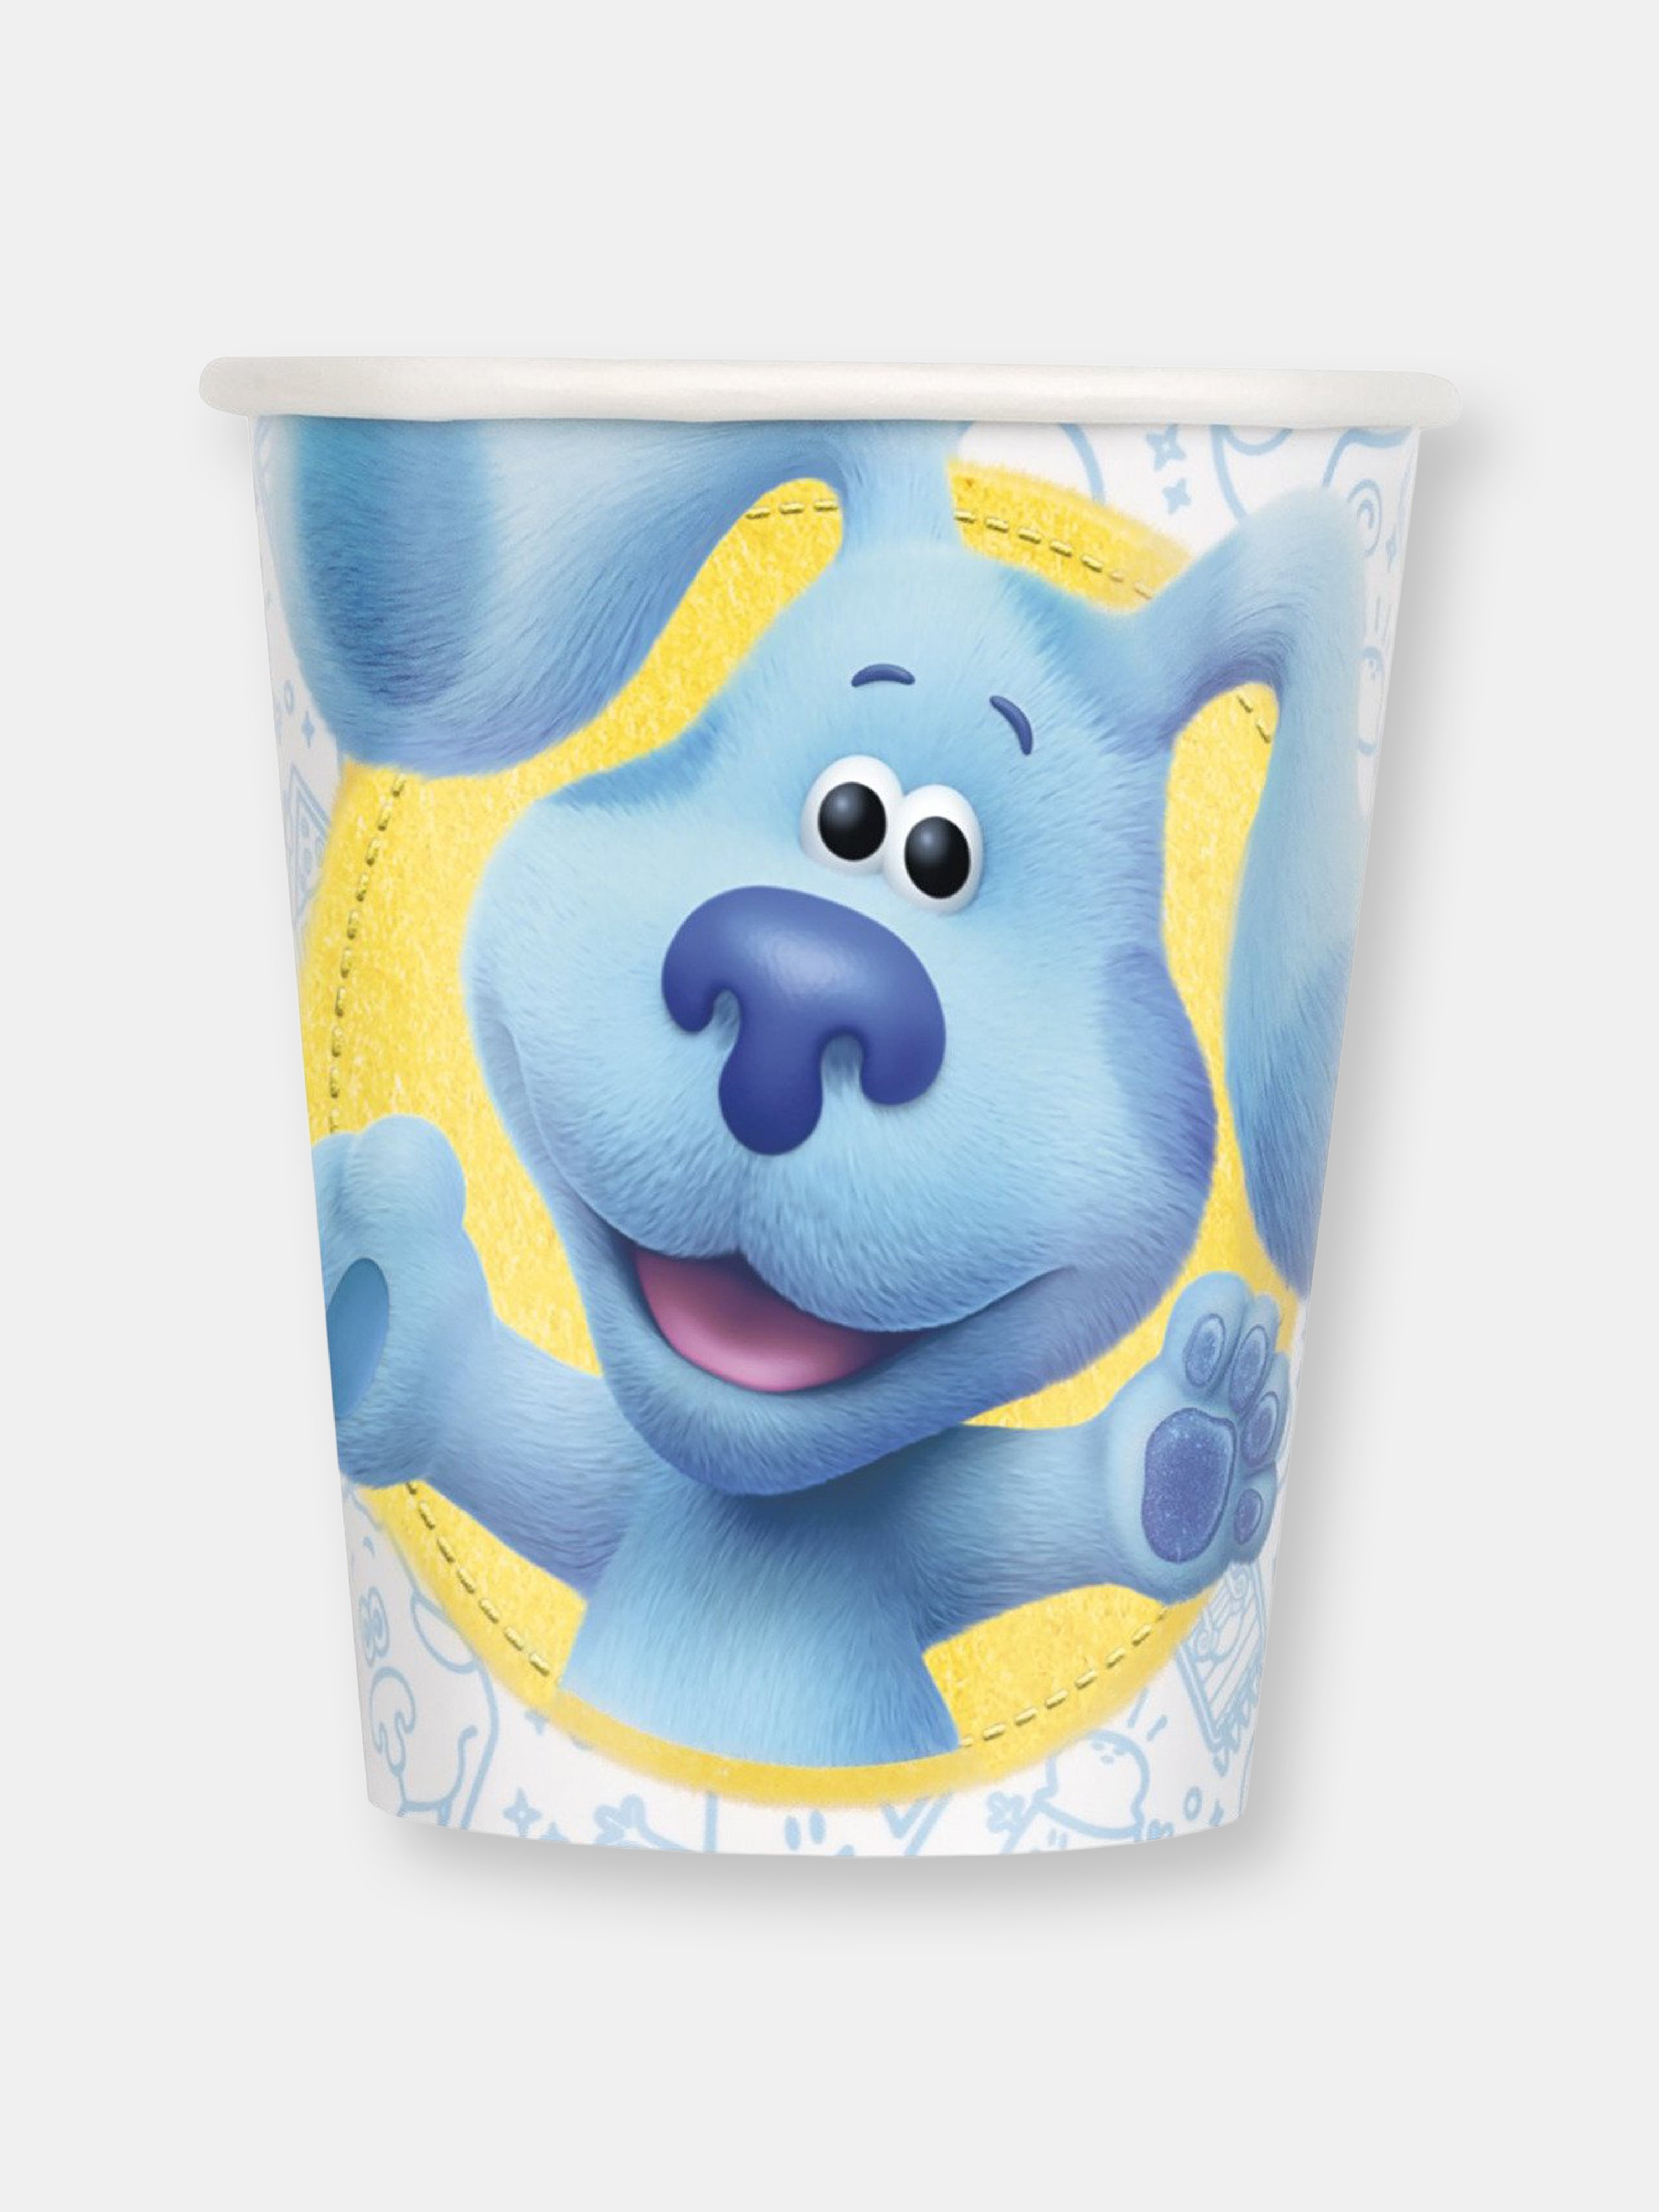 KIMMYSHOP UNIQUE BLUE'S CLUES 9OZ PAPER CUPS